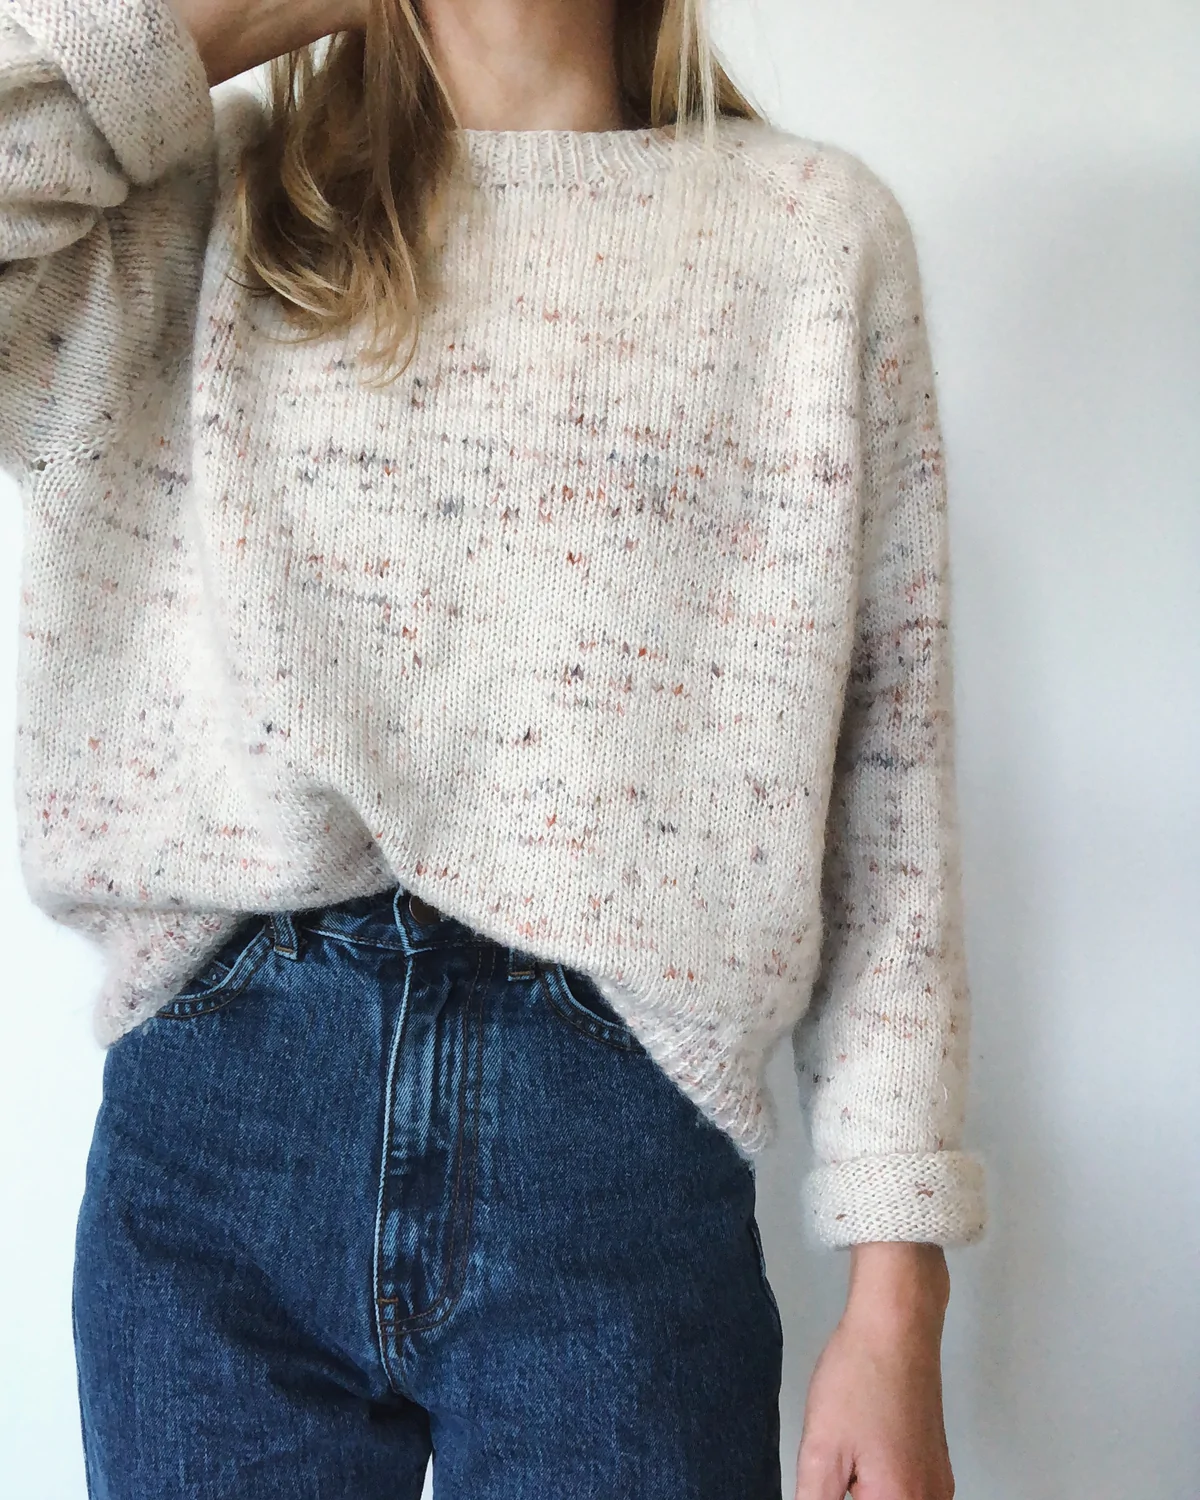 Strickset | nofrillssweater